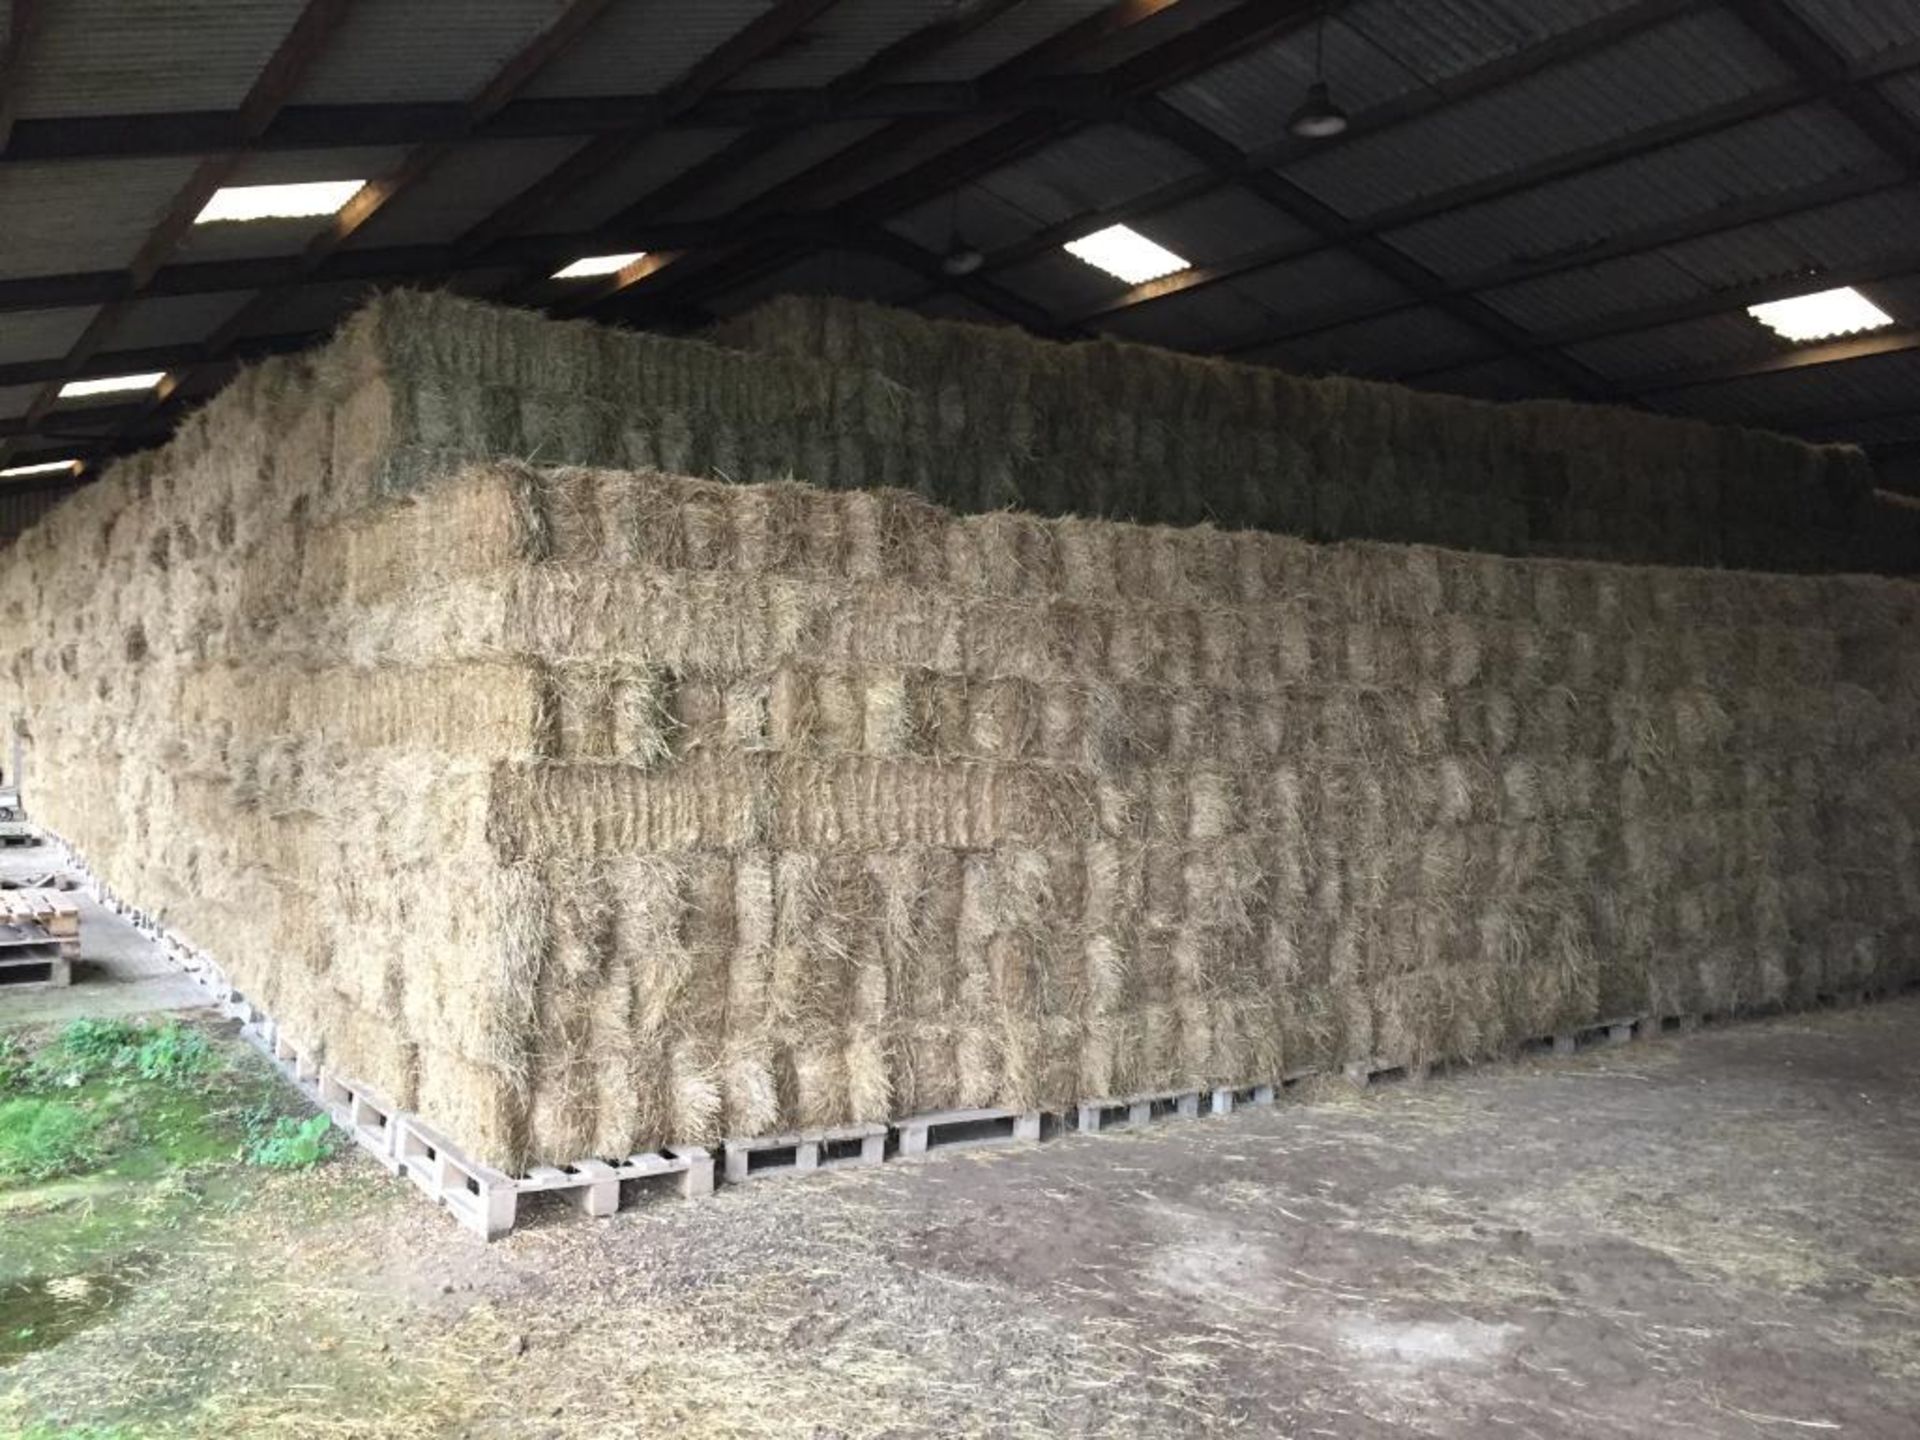 100 Flat 8 Bales only Meadow Hay in a barn. L. Radford Esq., Geaves Farm, PE27 5HG